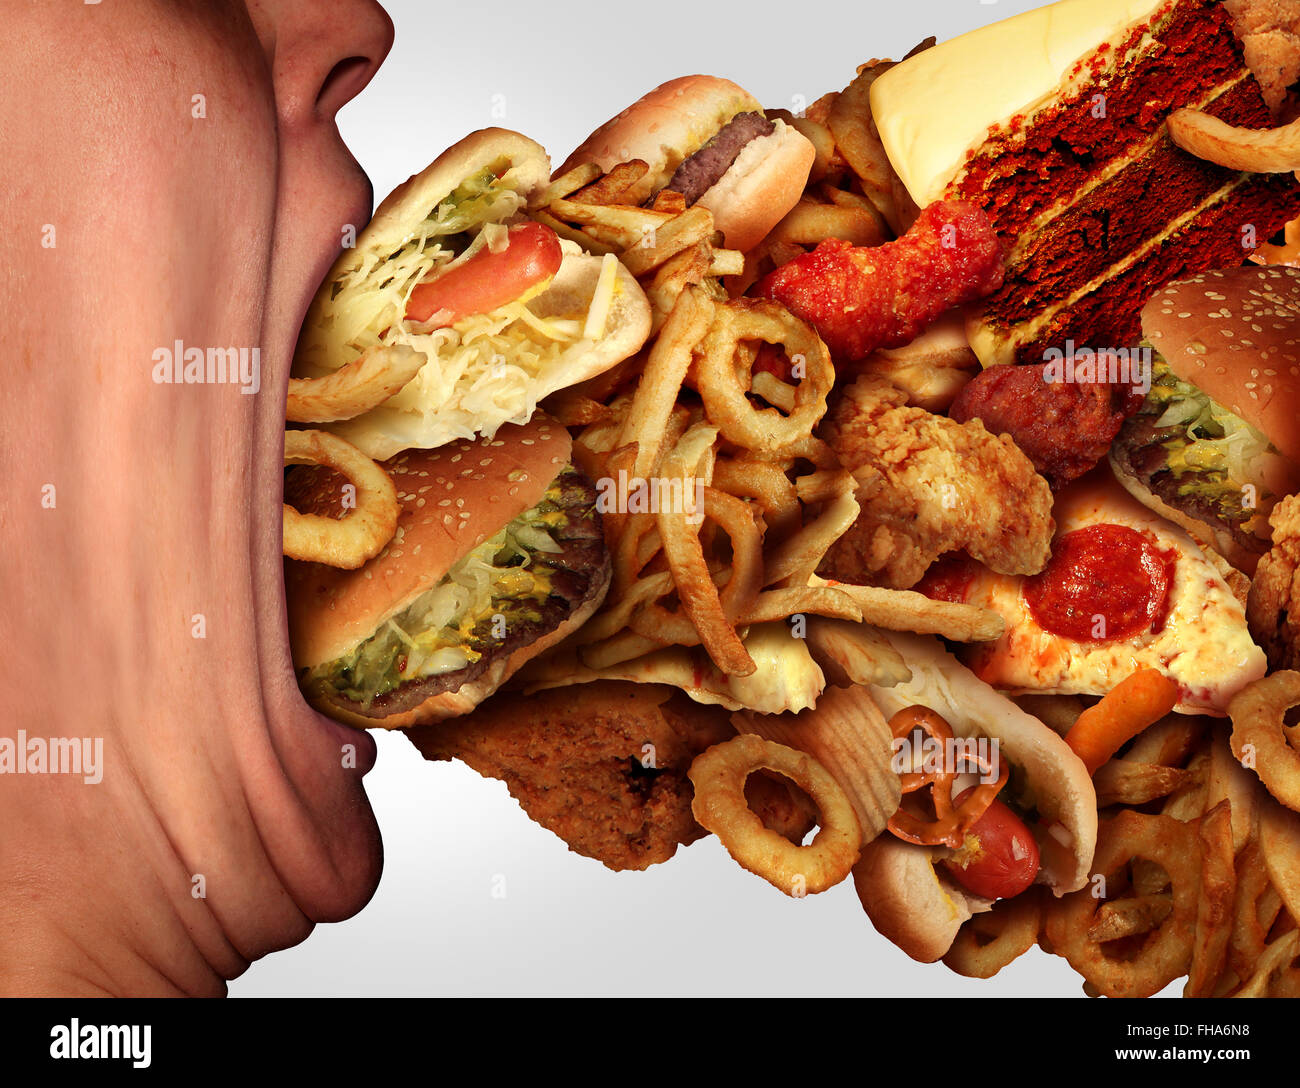 Junk-Food-Ernährung und Diät Gesundheit Problem Konzept als eine Person mit einem großen Mund weit offen Schlemmen auf einen übermäßig großen Gruppe von ungesunden Fast Food und Snacks zu essen. Stockfoto